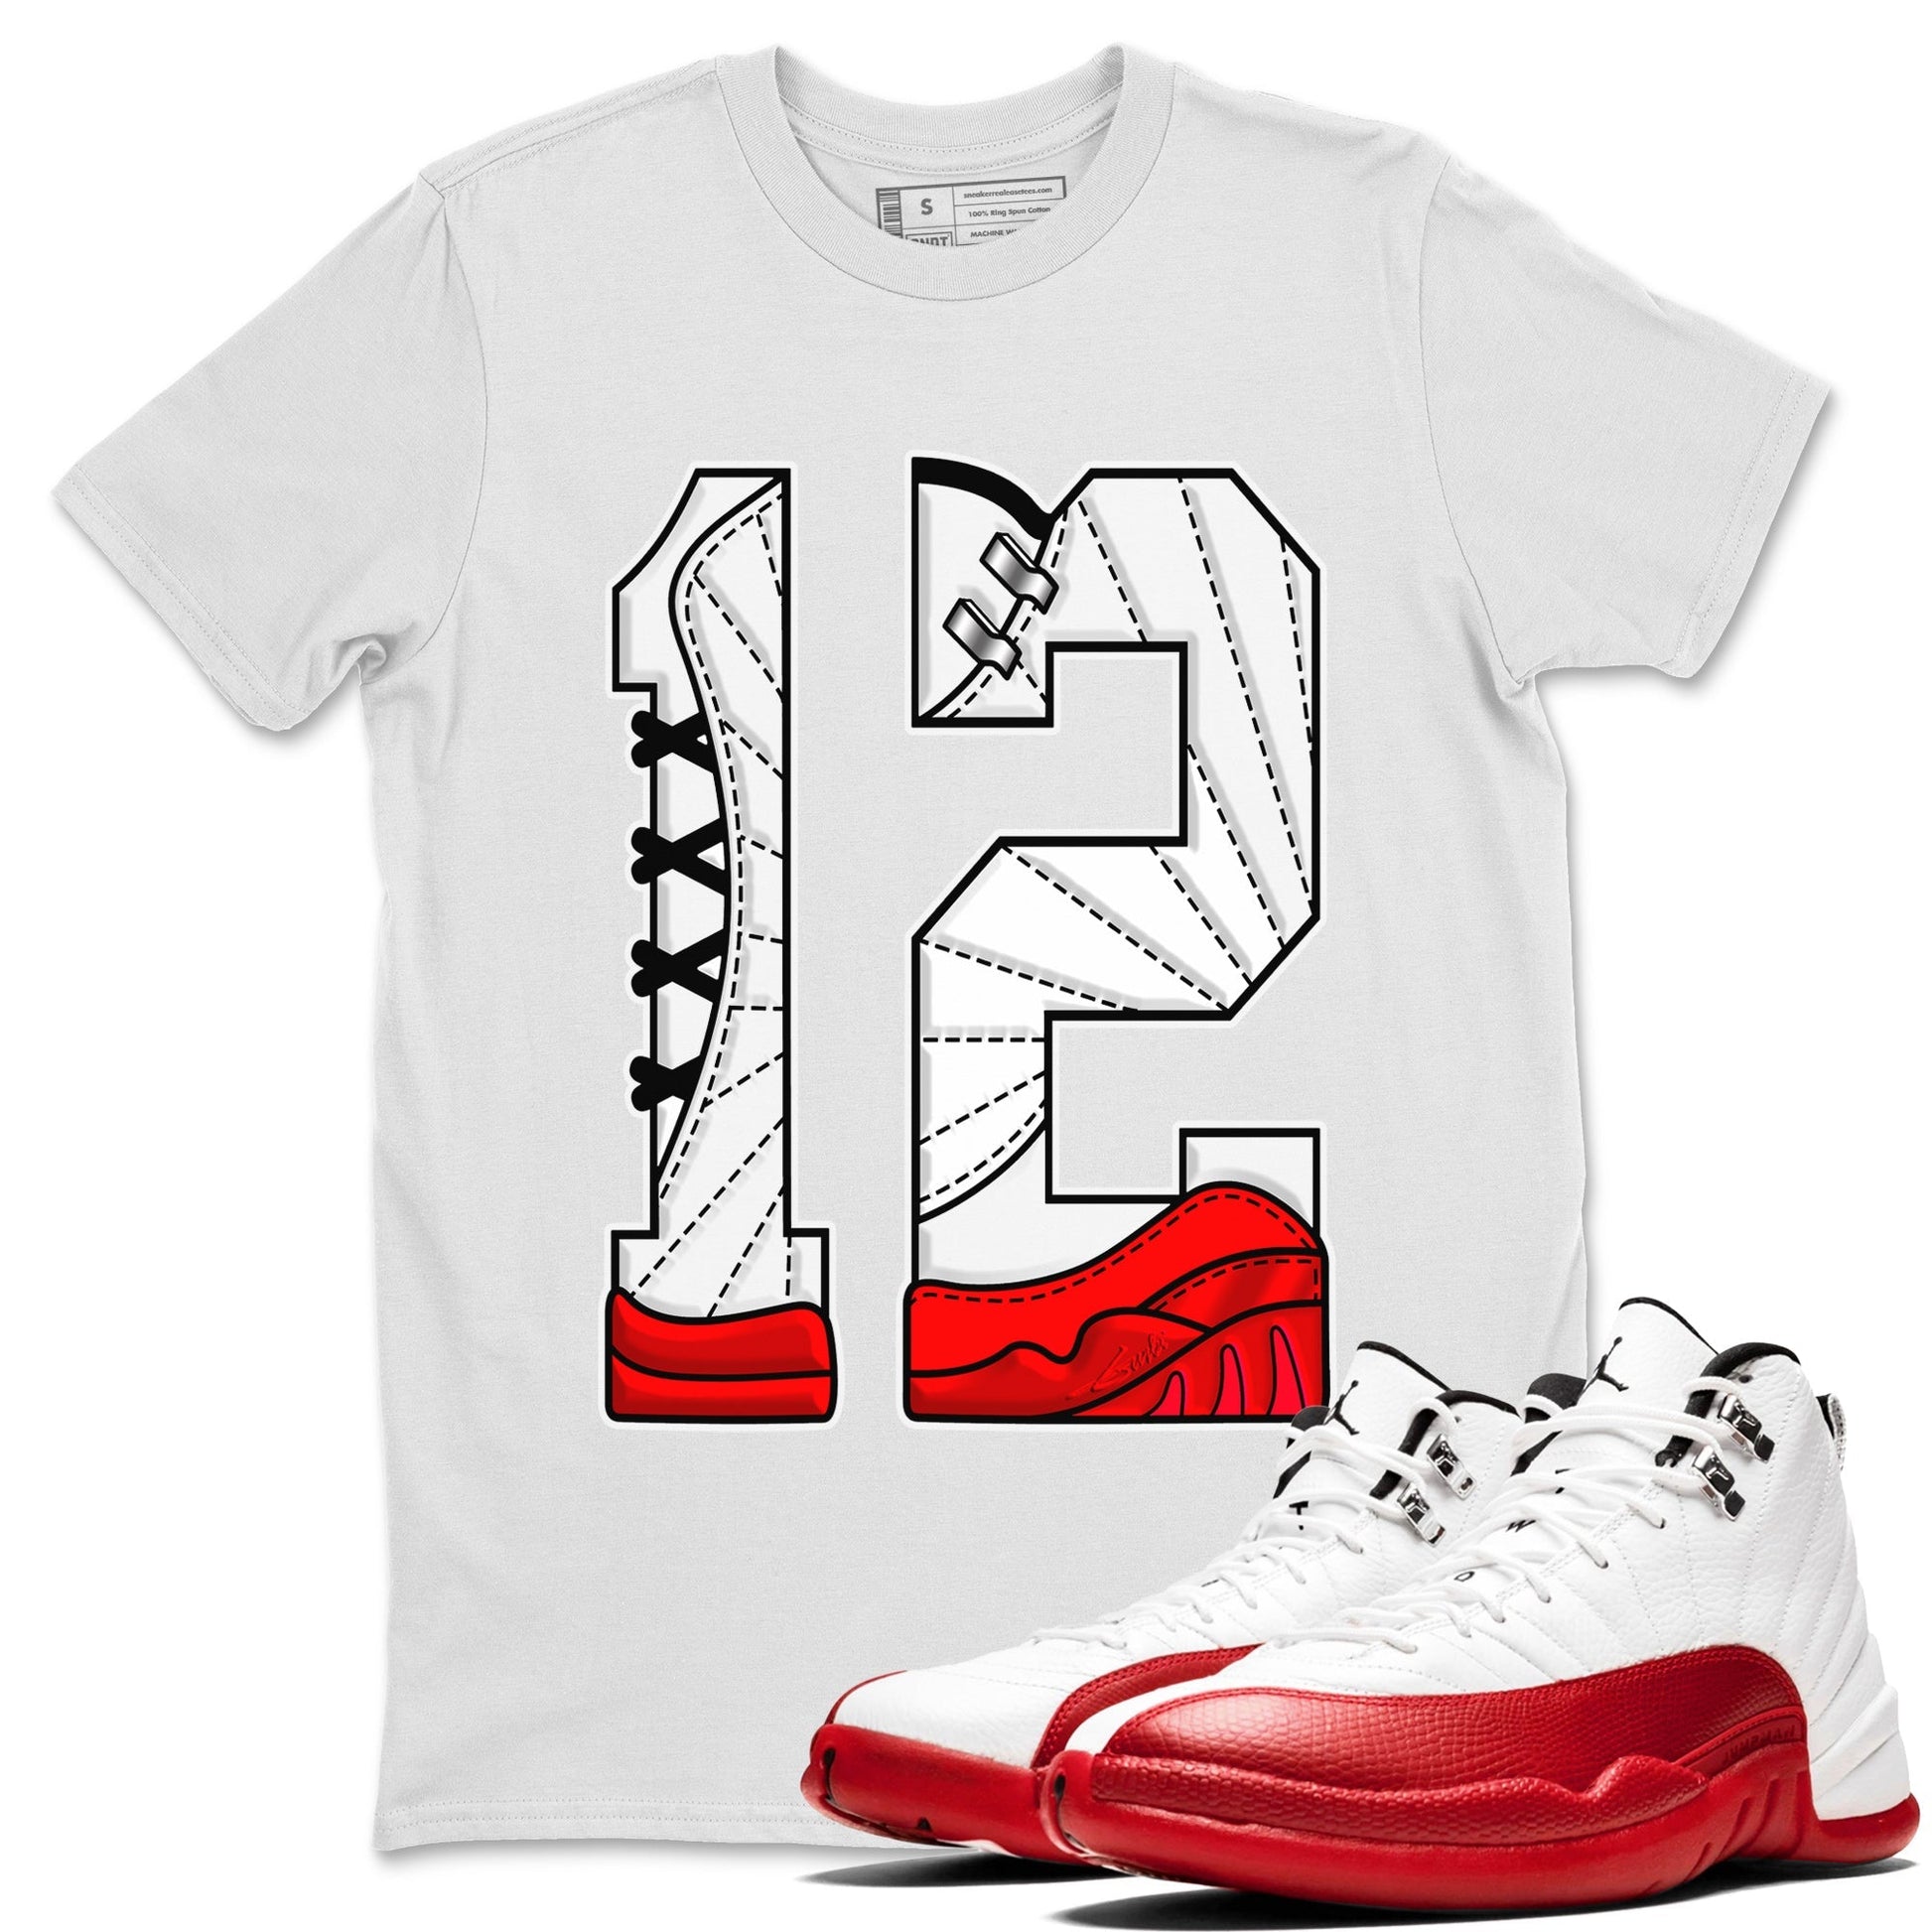 12s Cherry Sneaker Match Tees Number 12 Sneaker Tees Air Jordan 12 Cherry Sneaker Release Tees Unisex Shirts White 1